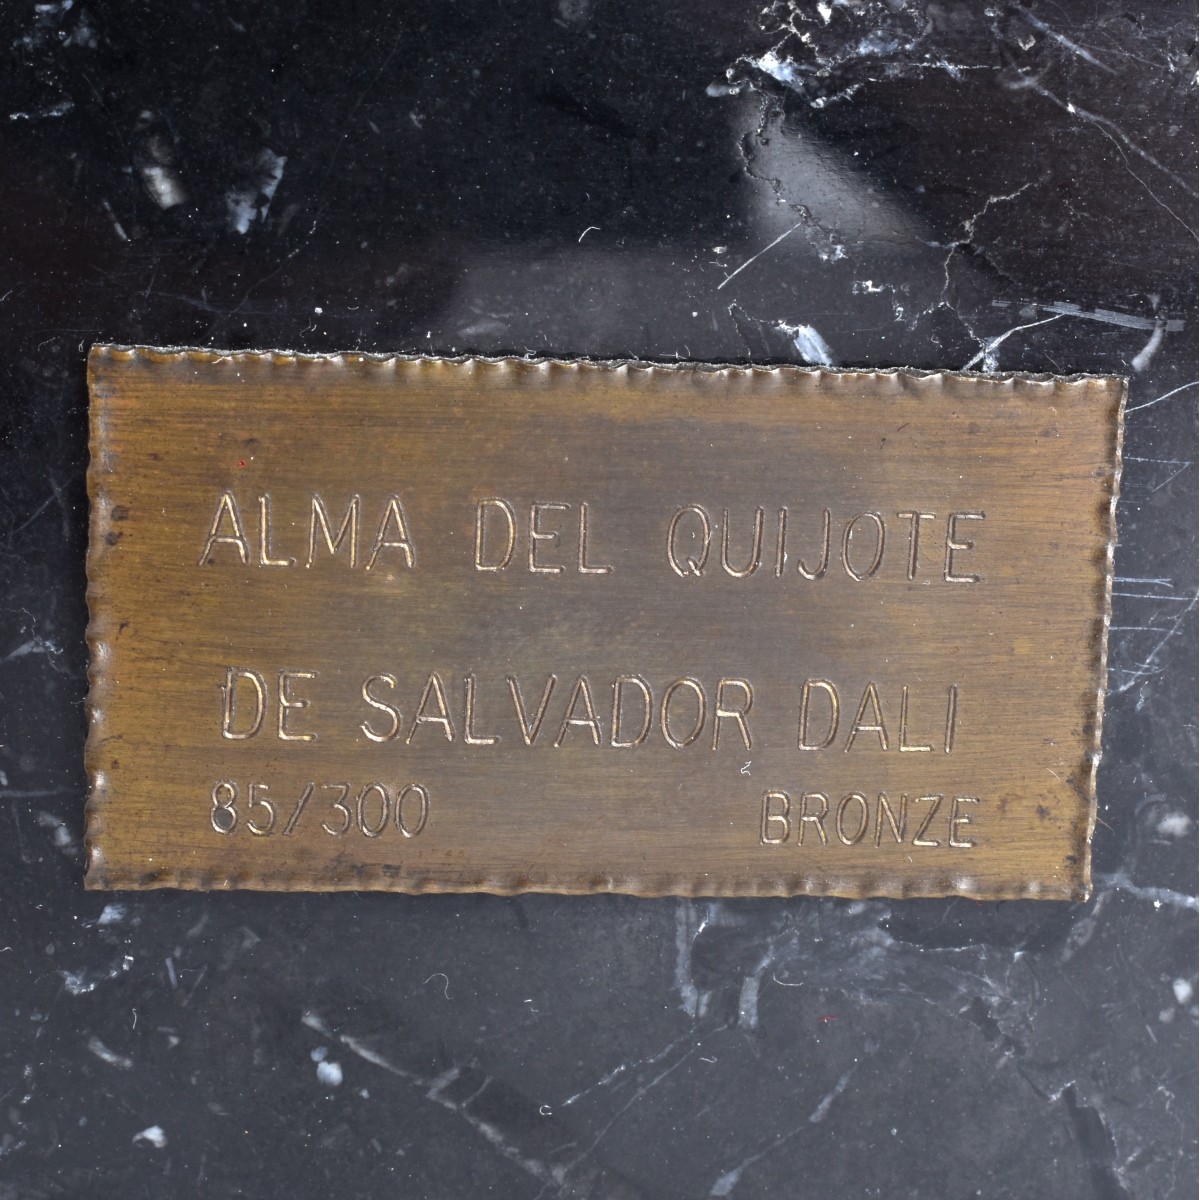 Salvador Dali, Spanish (1904 - 1989)